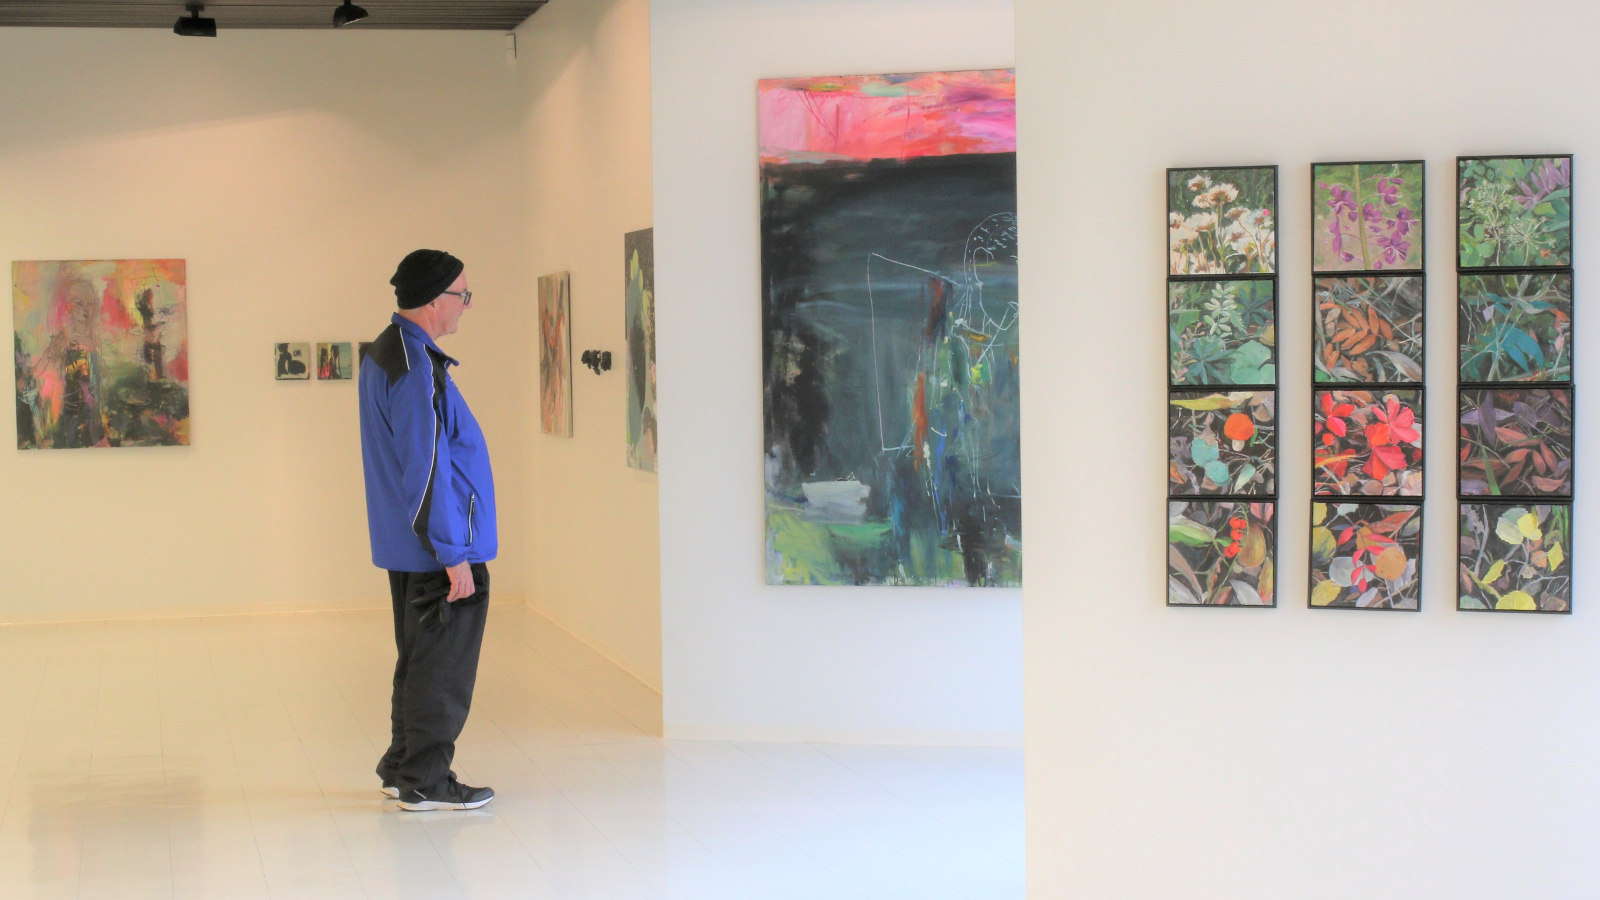 Kuvassa on Riihisaaren museon näyttely tila ja siinä ripustettuja näyttelyn tauluja eri seinillä.  Näyttelyä katsomassa on sivuttain sinisessä tuulipuvussa oleva mies.